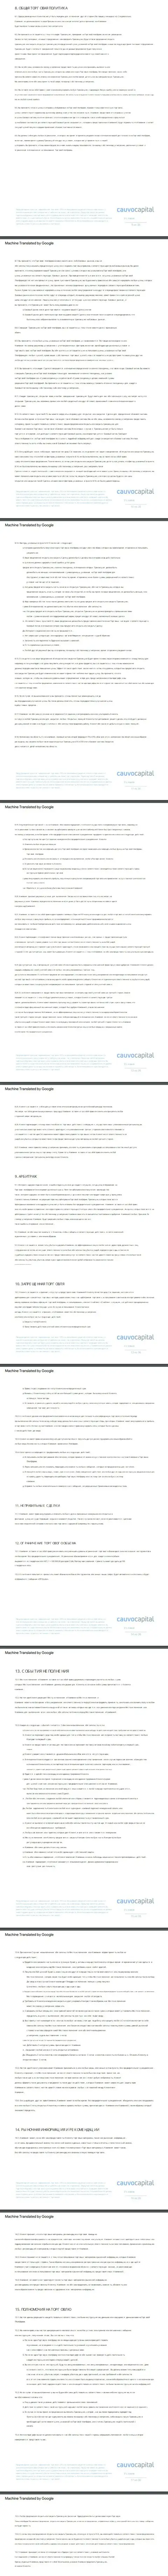 Вторая часть соглашения организации Cauvo Capital